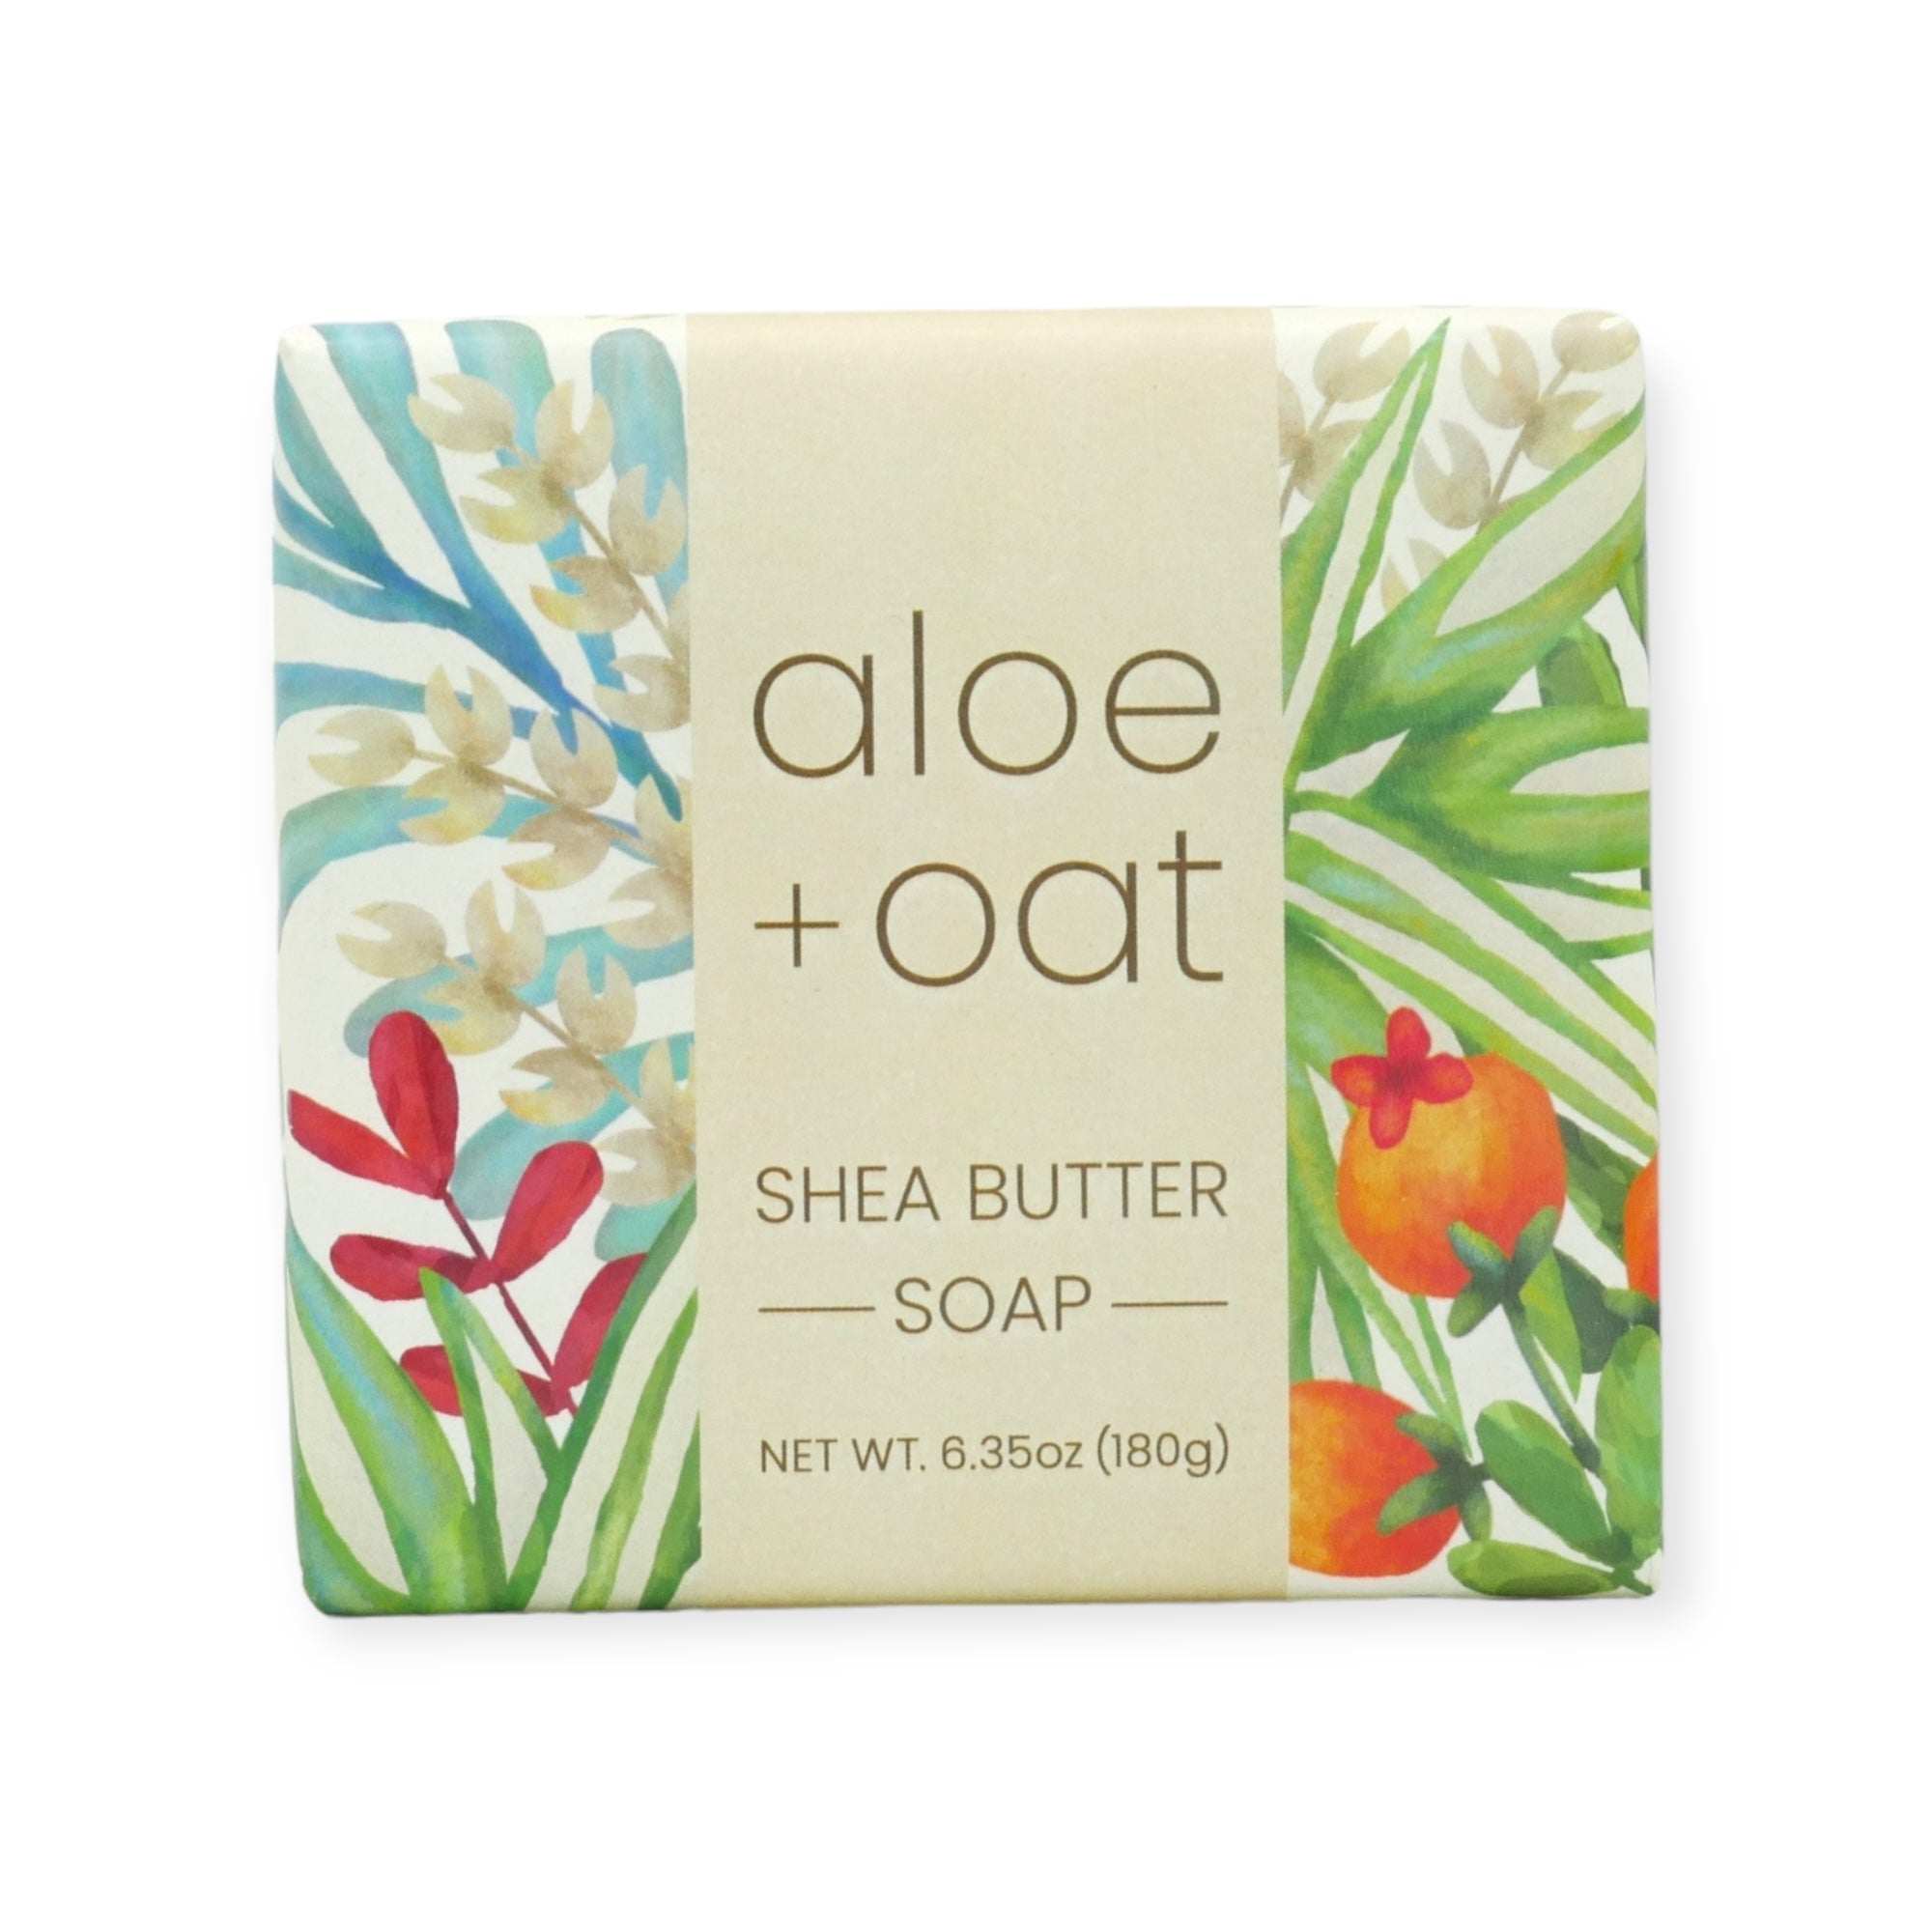 Aloe & Oat Shea Butter Soap by Greenwich Bay Trading Co.